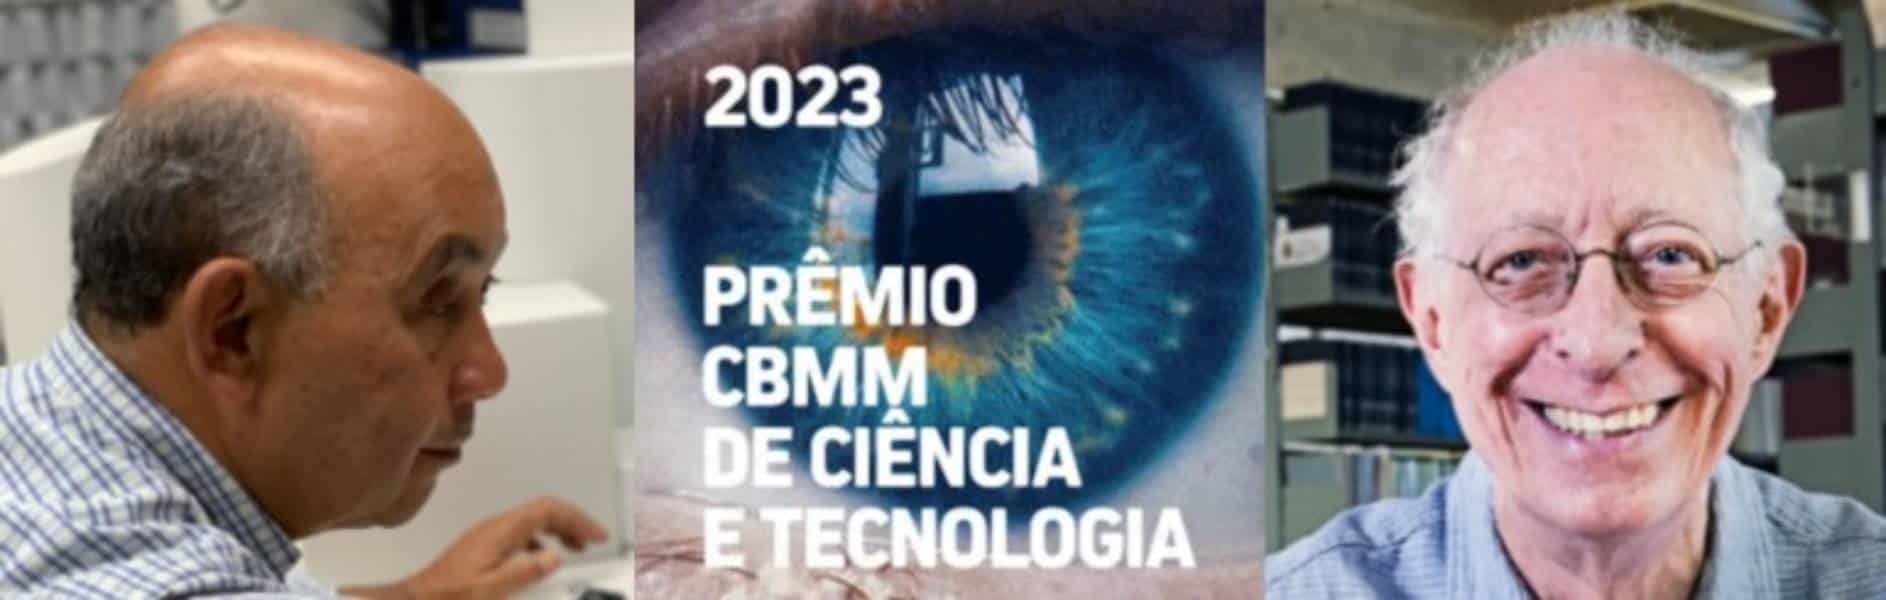 manutecao.net-CBMM-anuncia-os-vencedores-do-Premio-CBMM-de-Ciencia-e-Tecnologia-2023-min.jpg